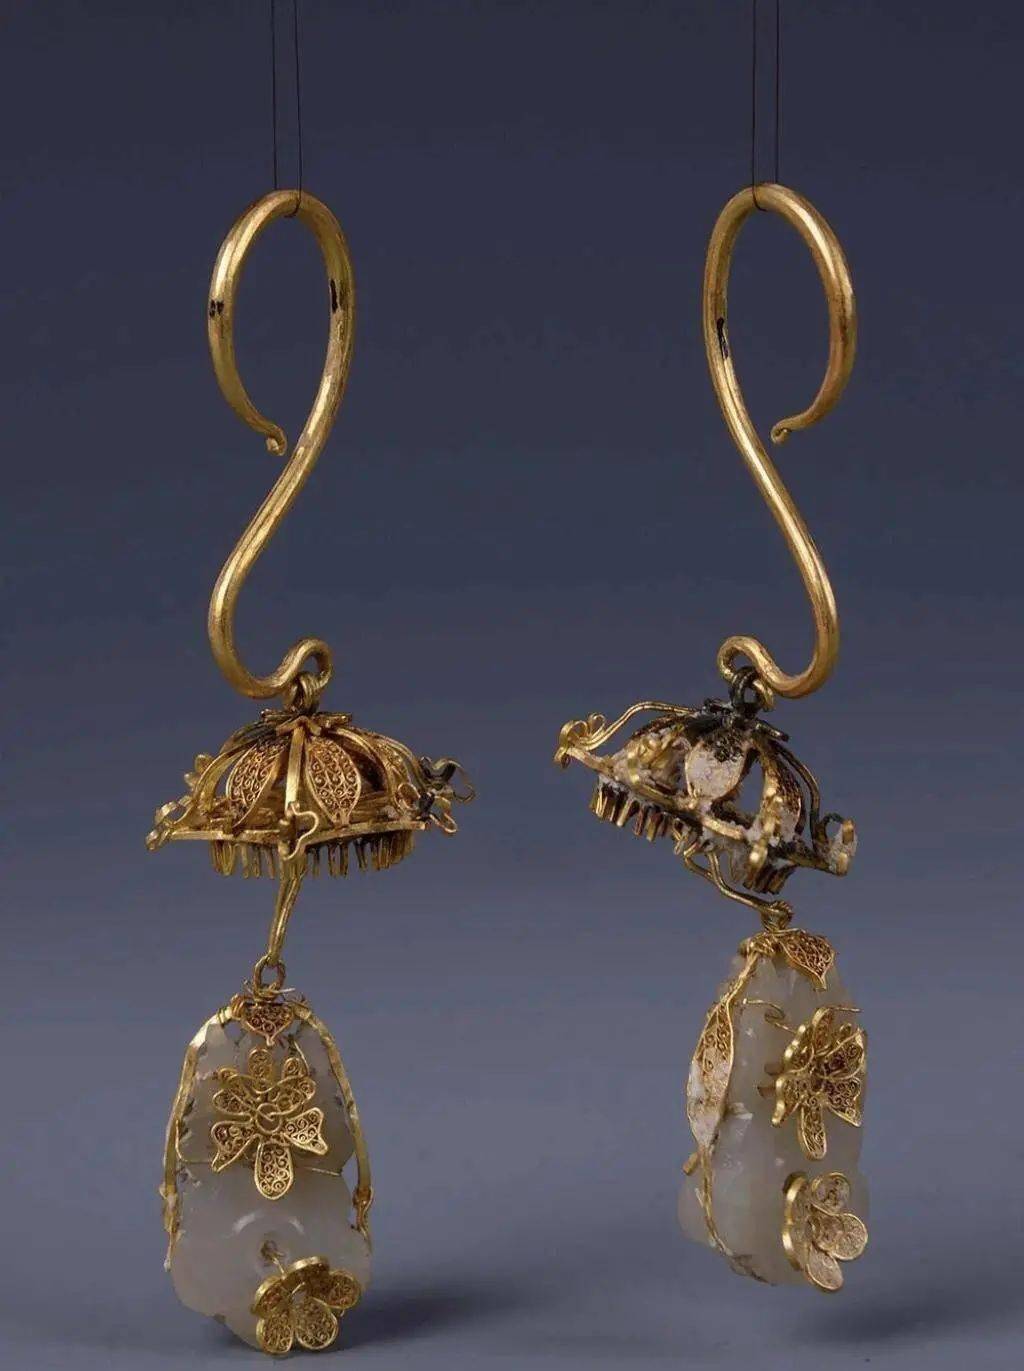 中国古代女子耳饰的秘密除了精湛的工艺还有